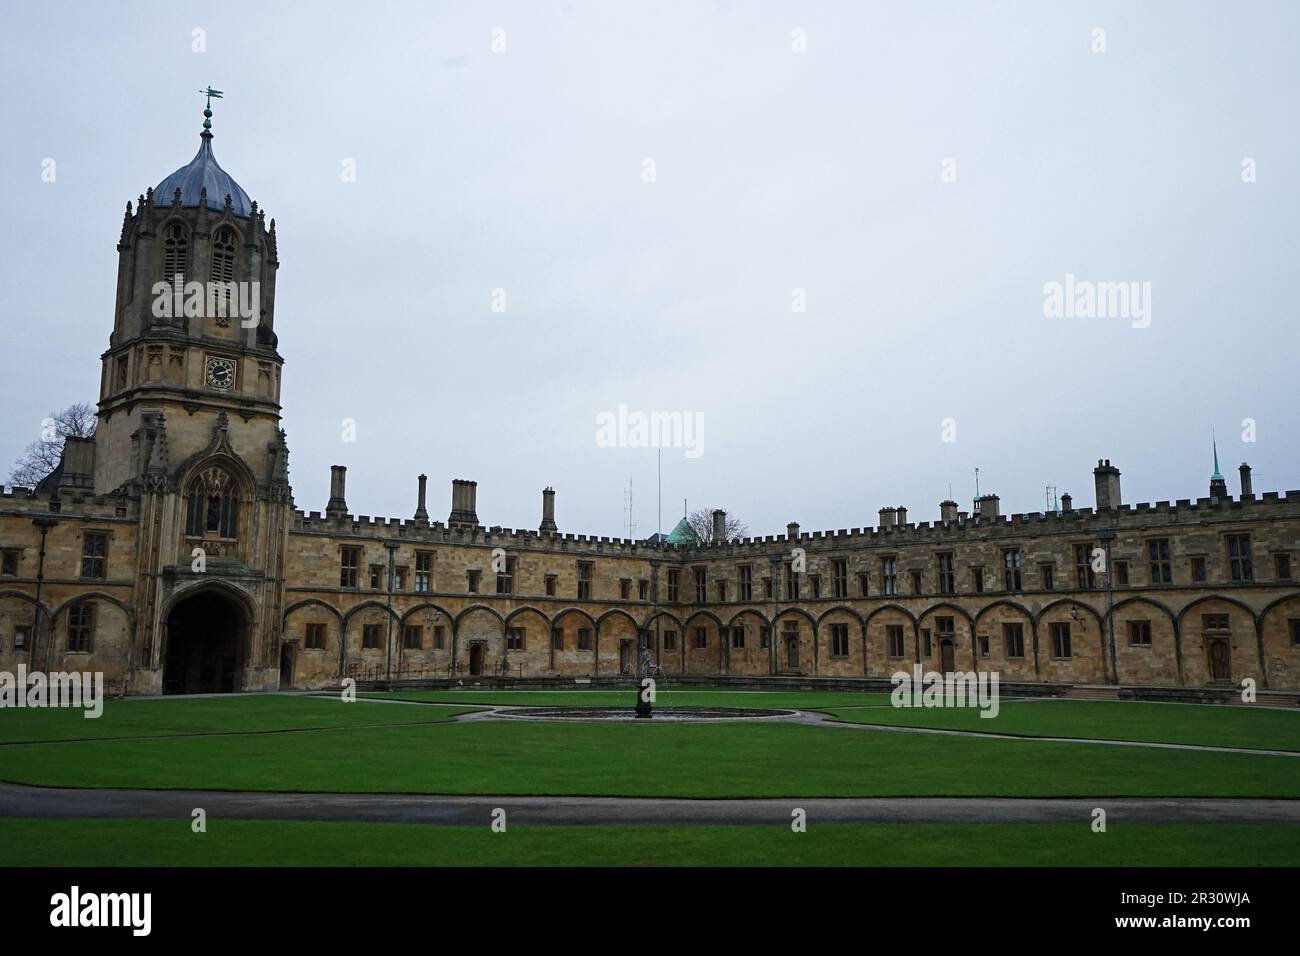 Externe europäische Architektur und Gebäudedesign des Tom Tower of Christ Church - Oxford University, England Stockfoto